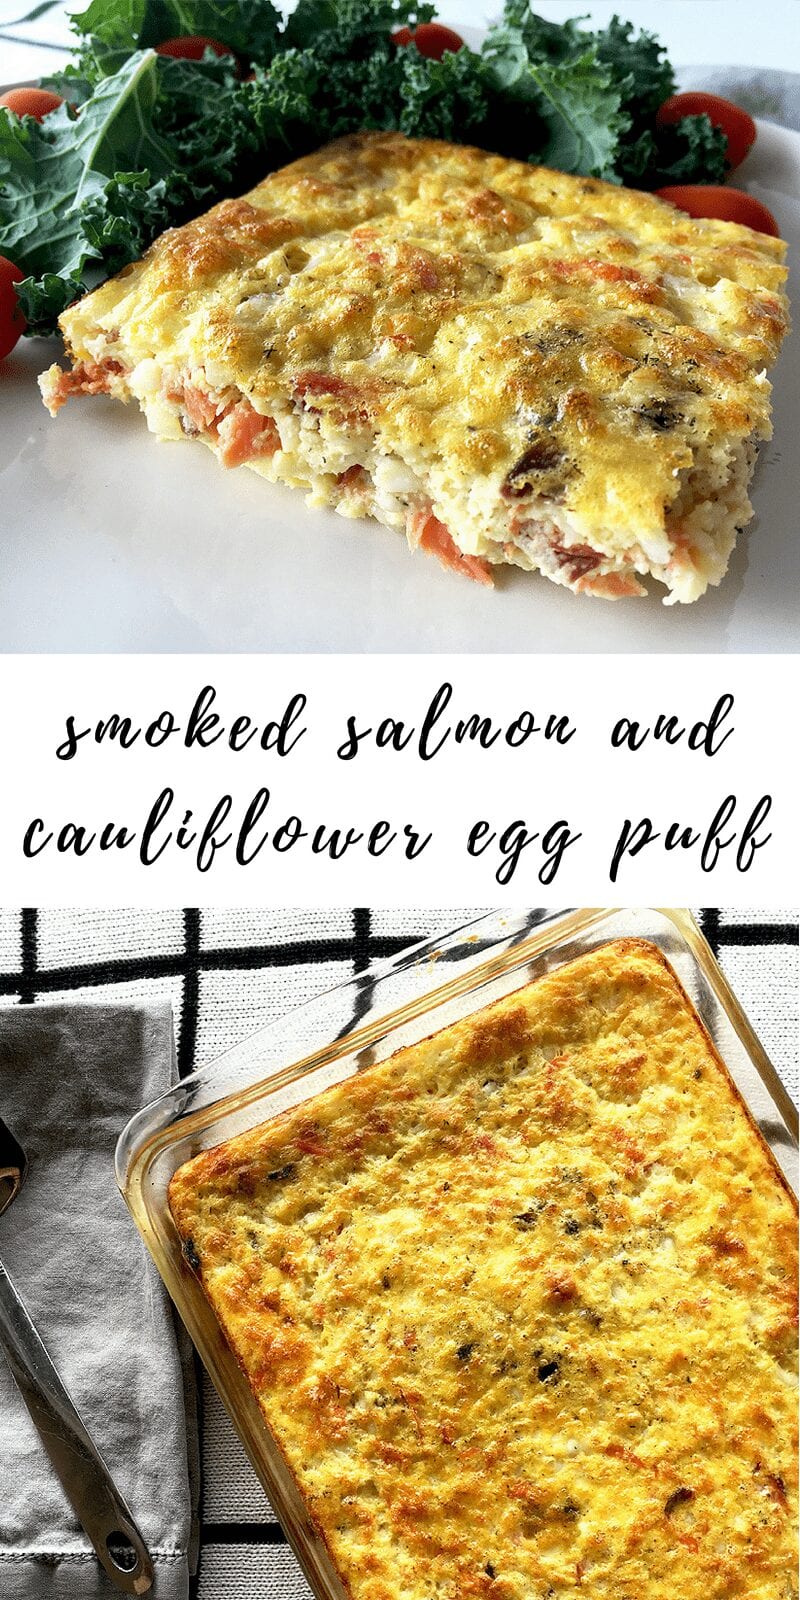 smoked salmon and cauliflower egg puff